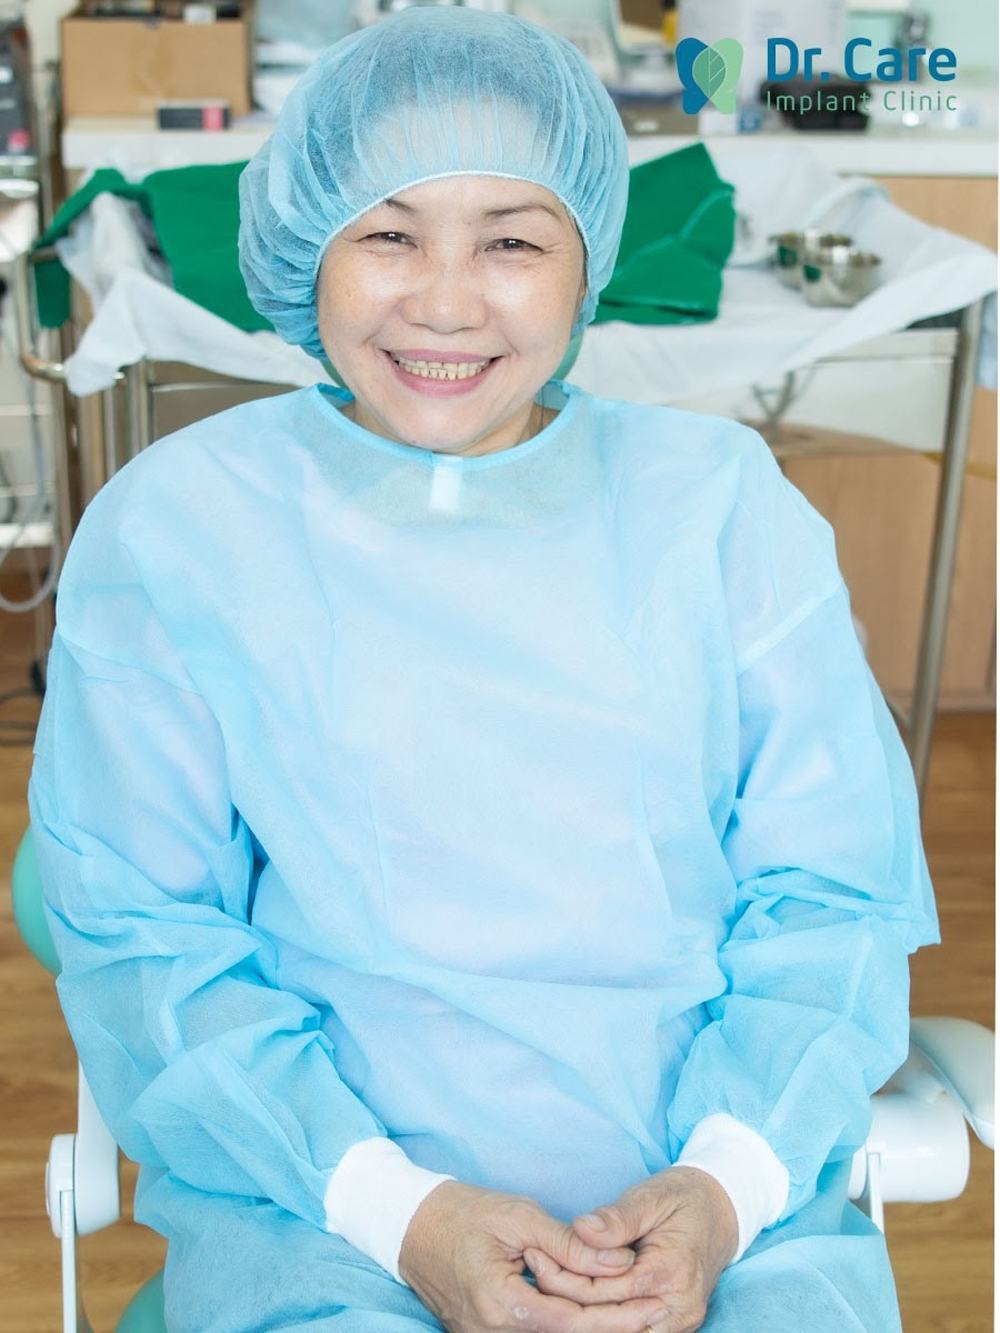 Vì an tâm nên trước khi trồng răng Implant, tâm lý cô Lan rất thoải mái 